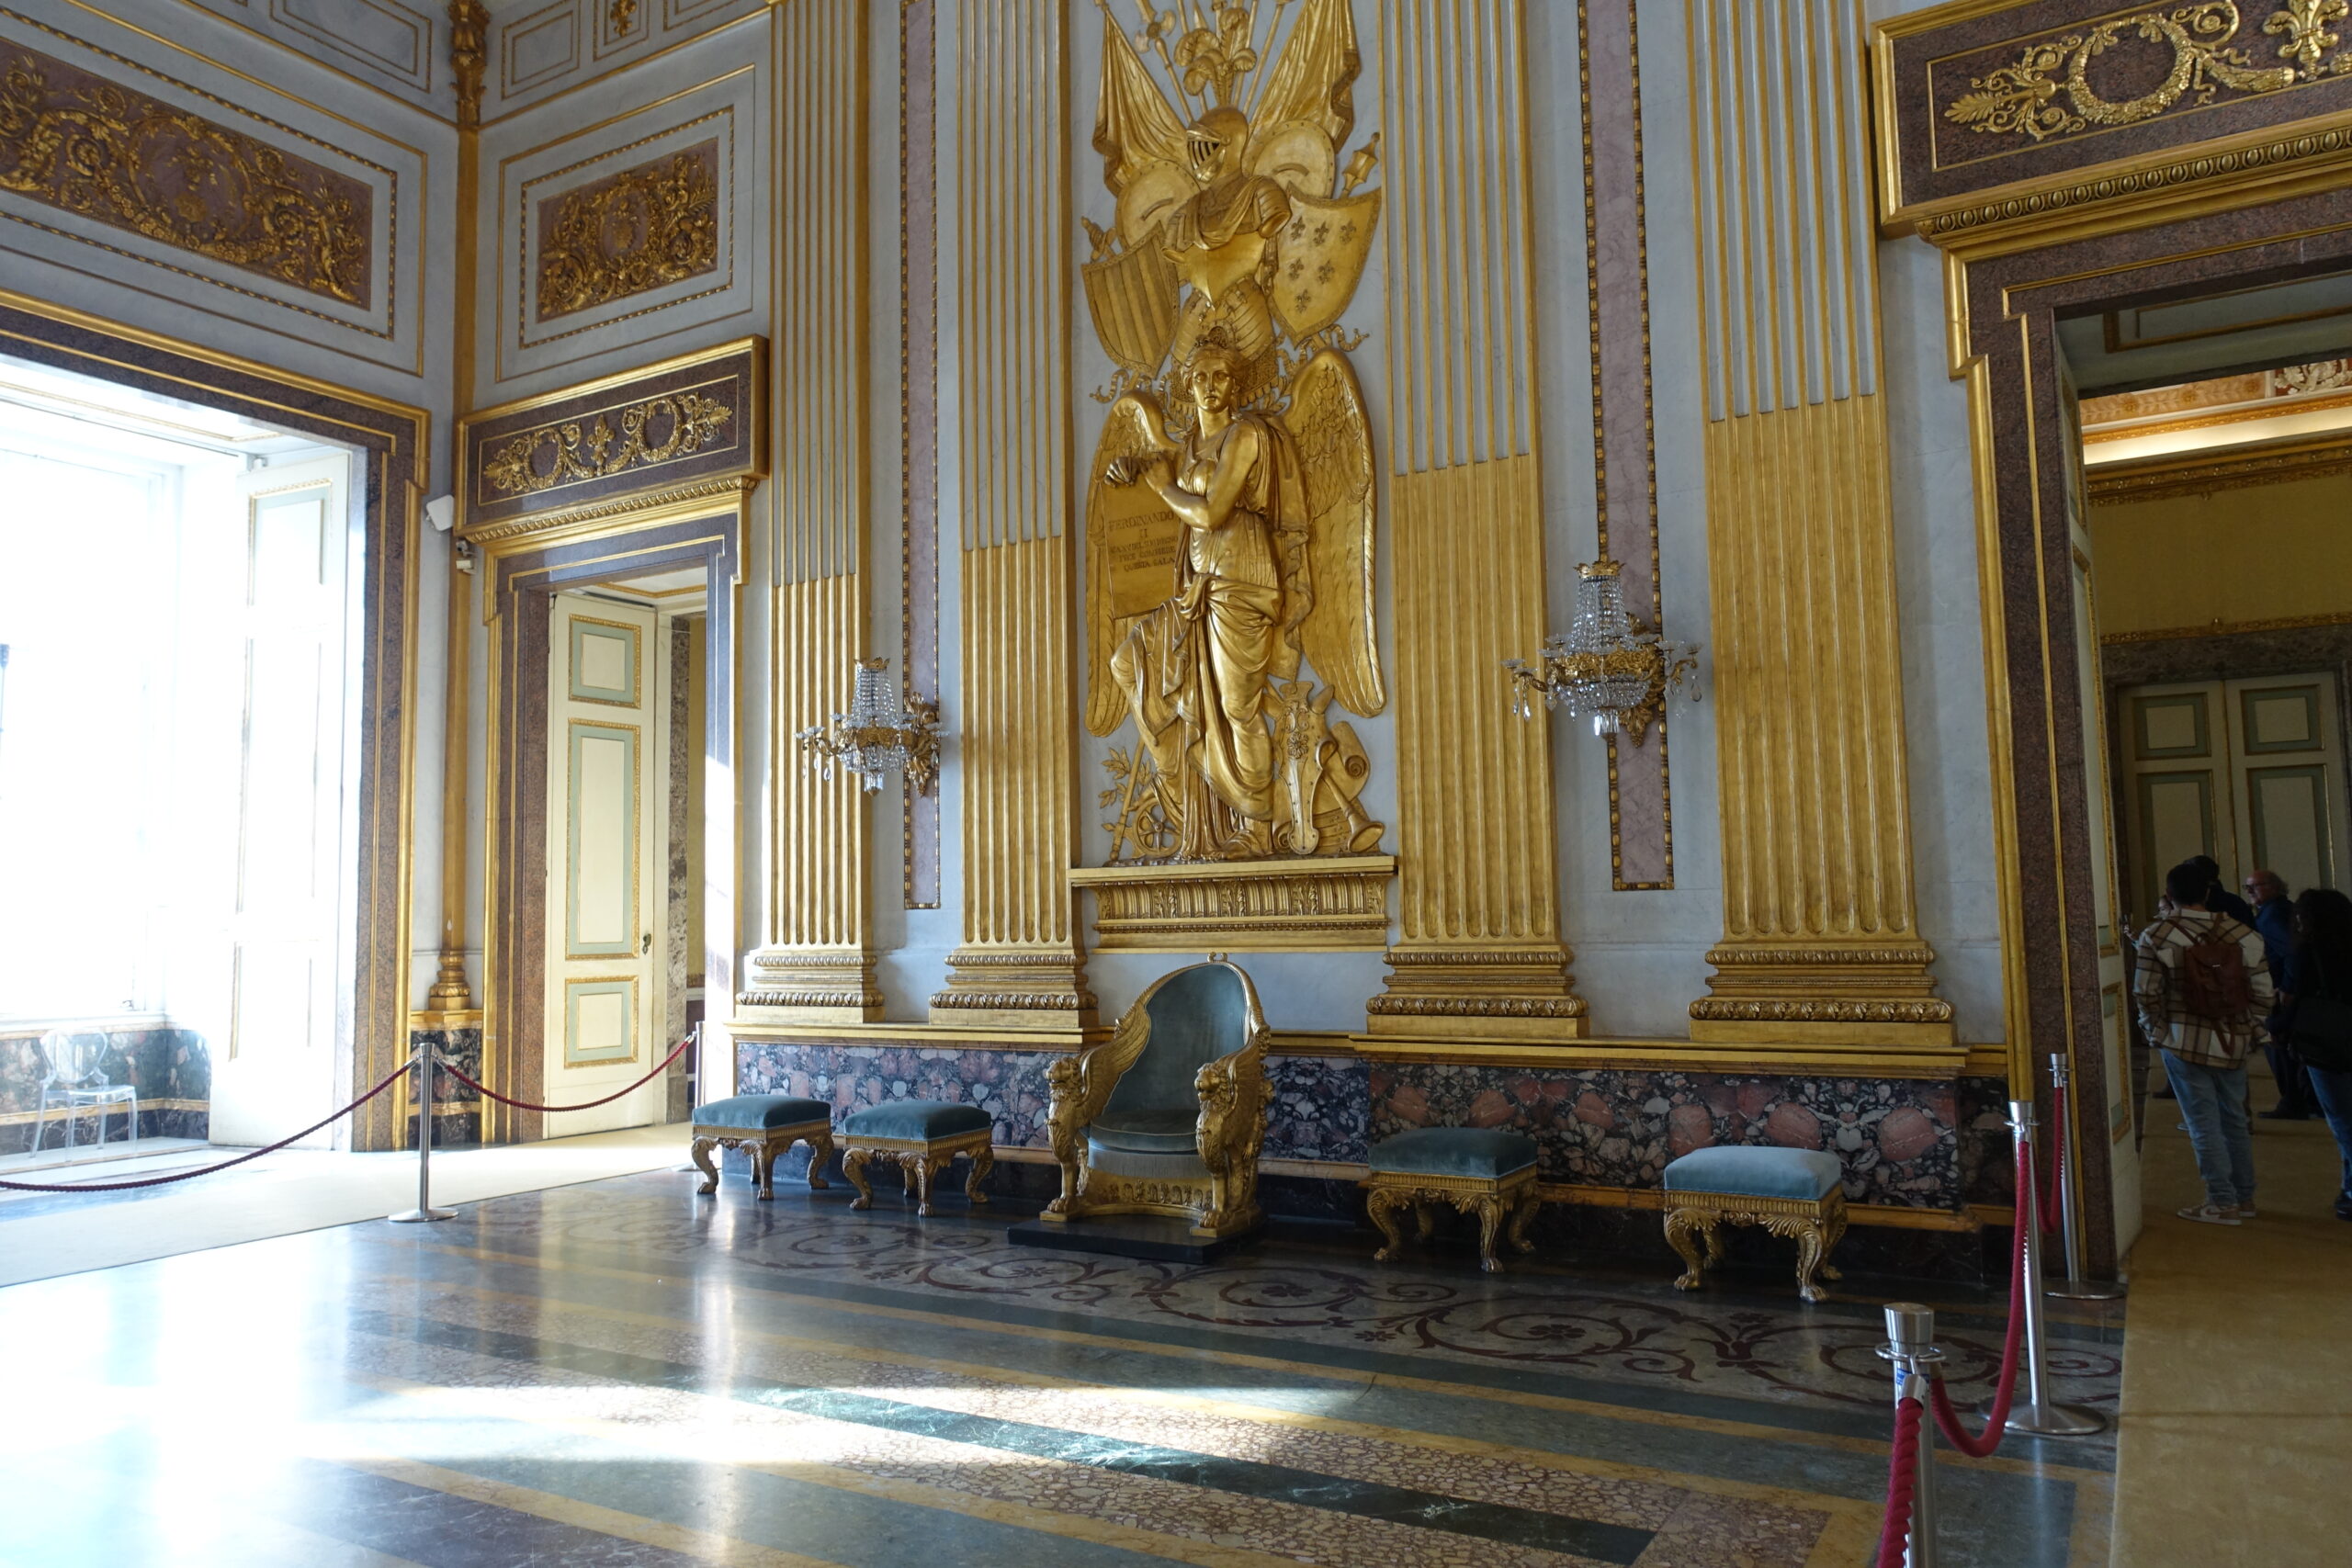 絶対に訪れたい、ナポリ近郊のおすすめ観光地、カゼルタ宮殿の行き方